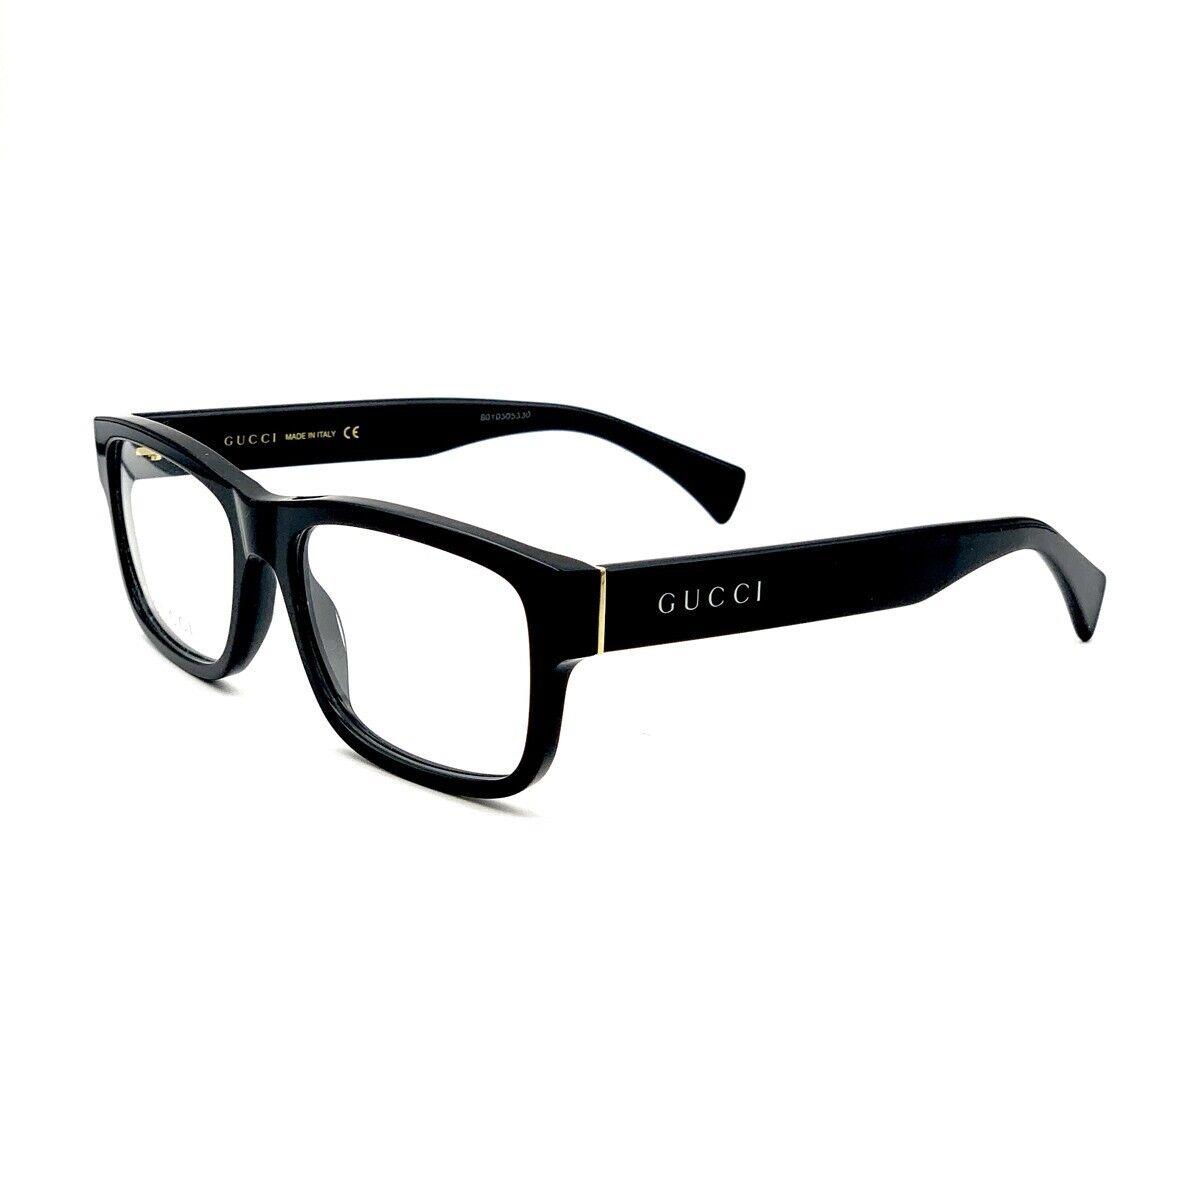 Gucci GG1141O 001 Eyeglasses Frames Unisex Black Clear 56mm